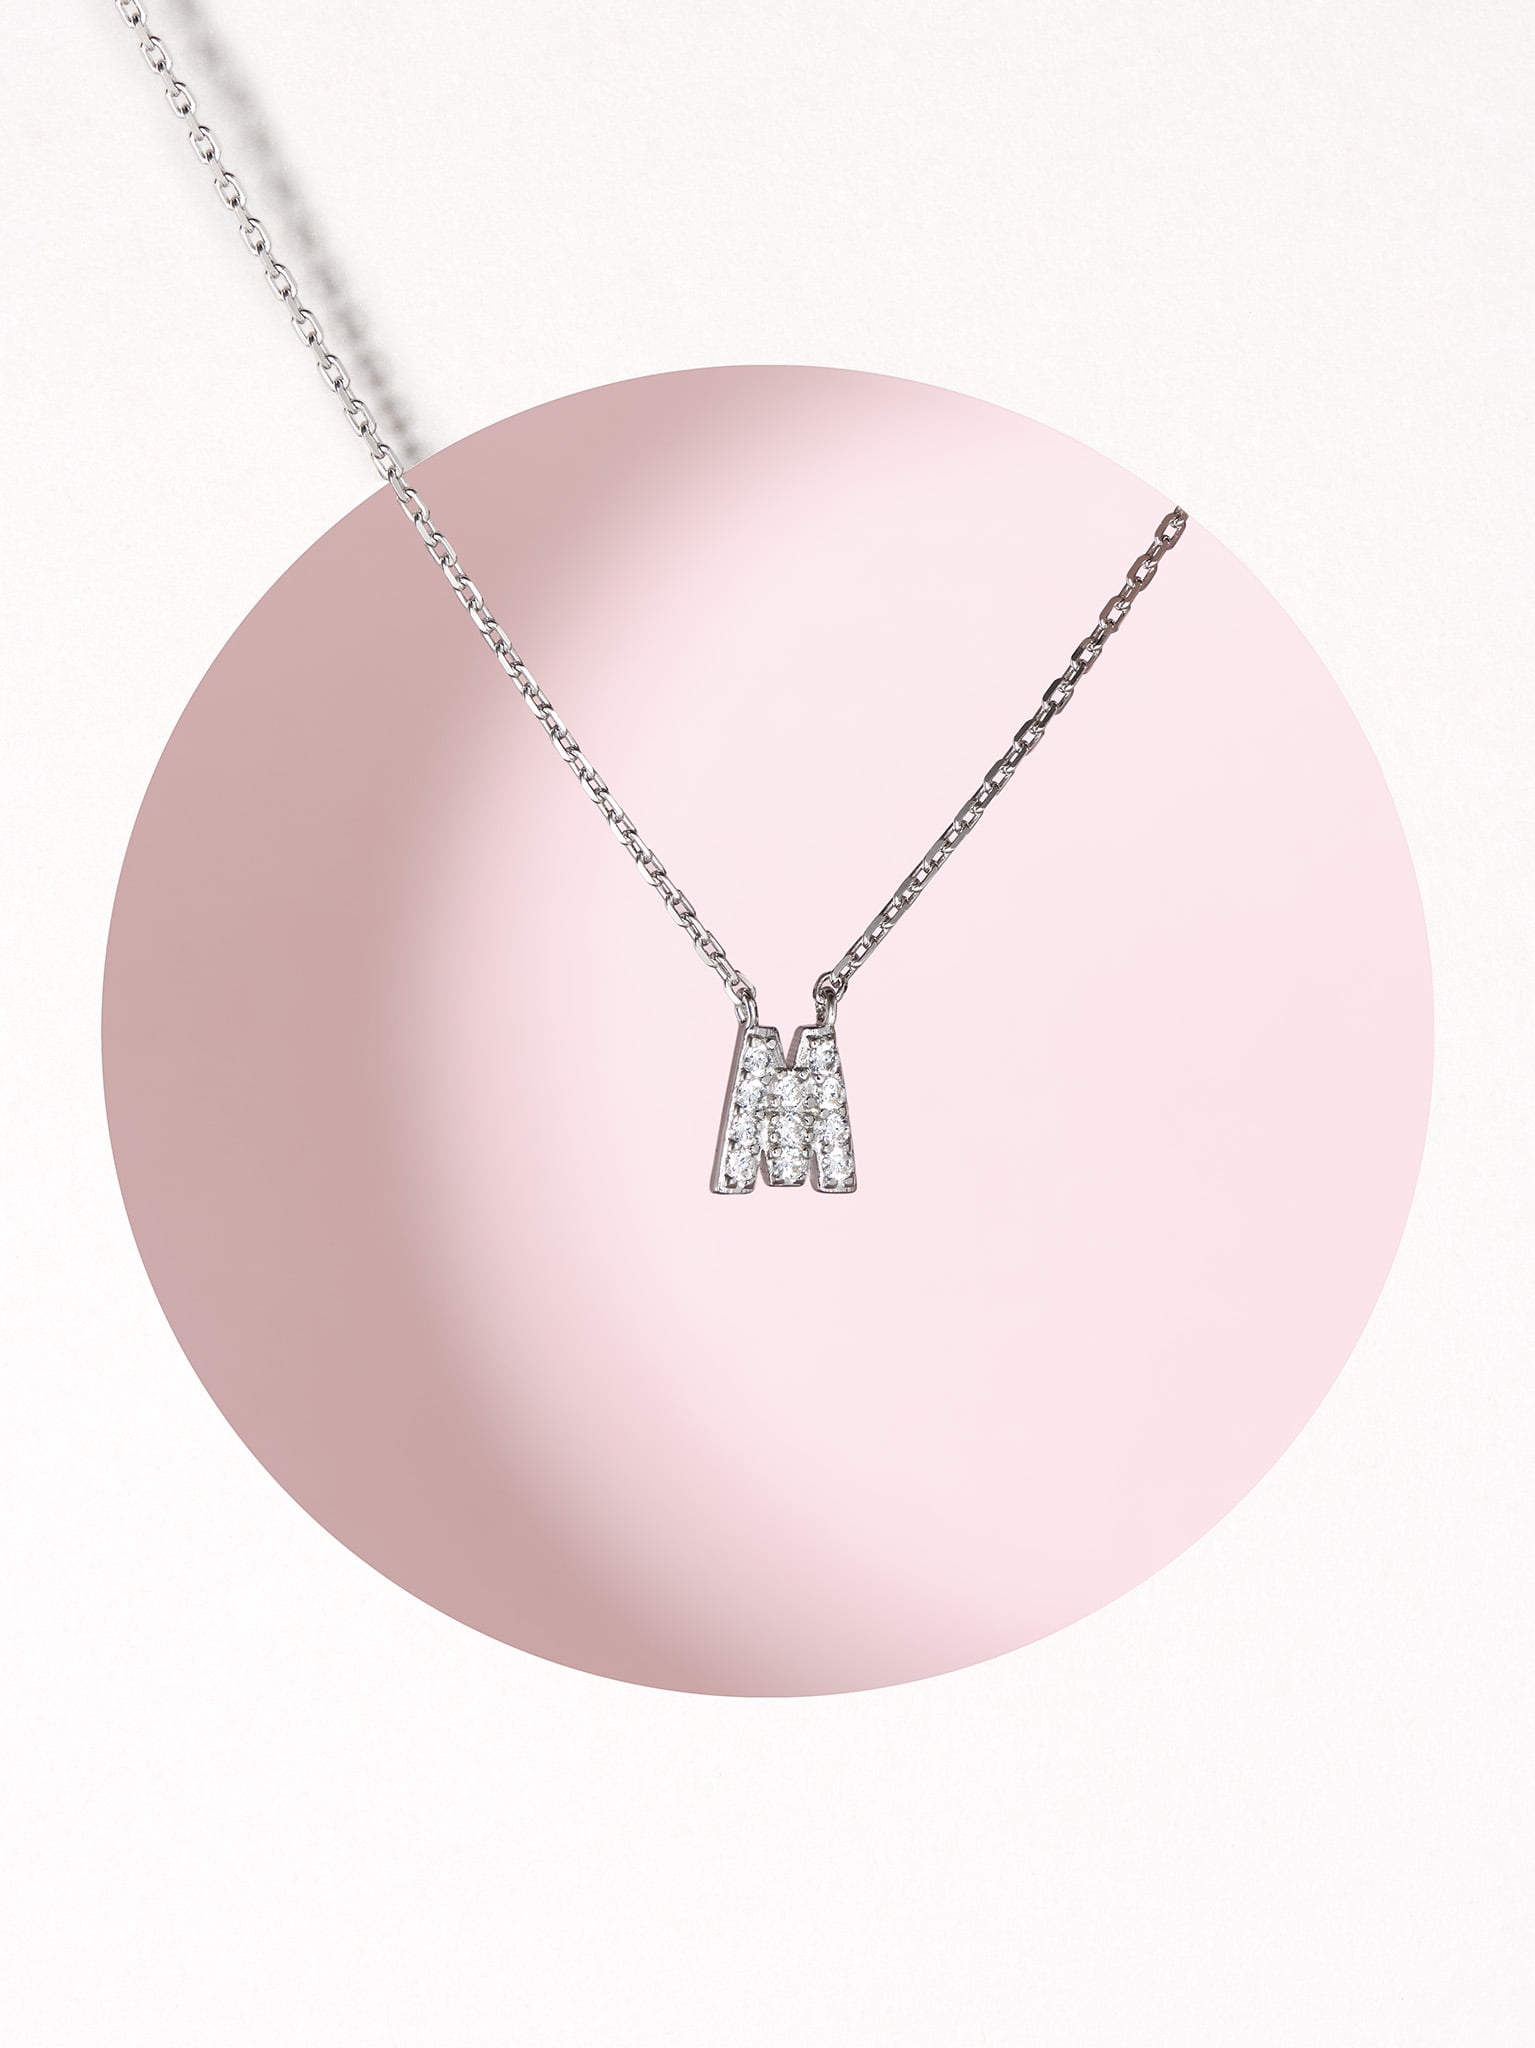 Louis Vuitton Lockit Pendant Necklace - Sterling Silver Pendant